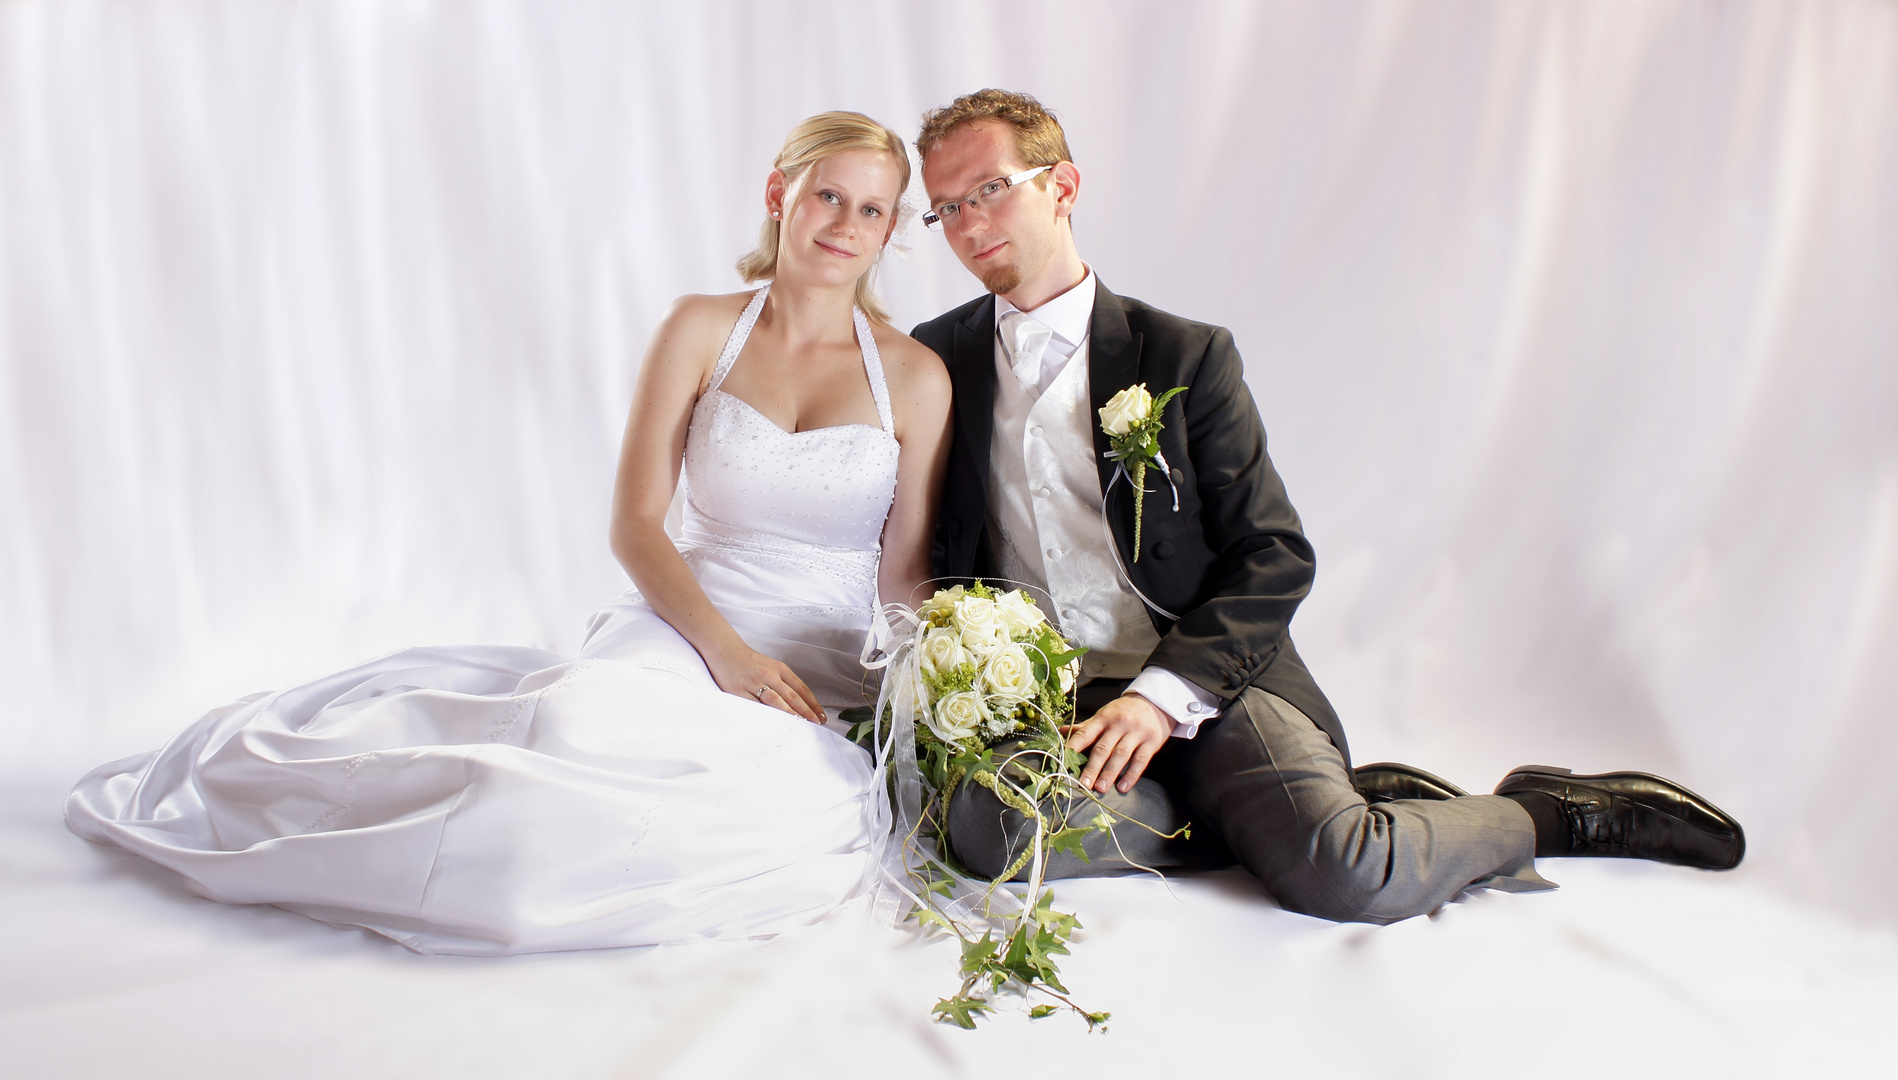 Hochzeitsfoto@Studio2013 Foto & Bild | hochzeit, studio, menschen Bilder  auf fotocommunity